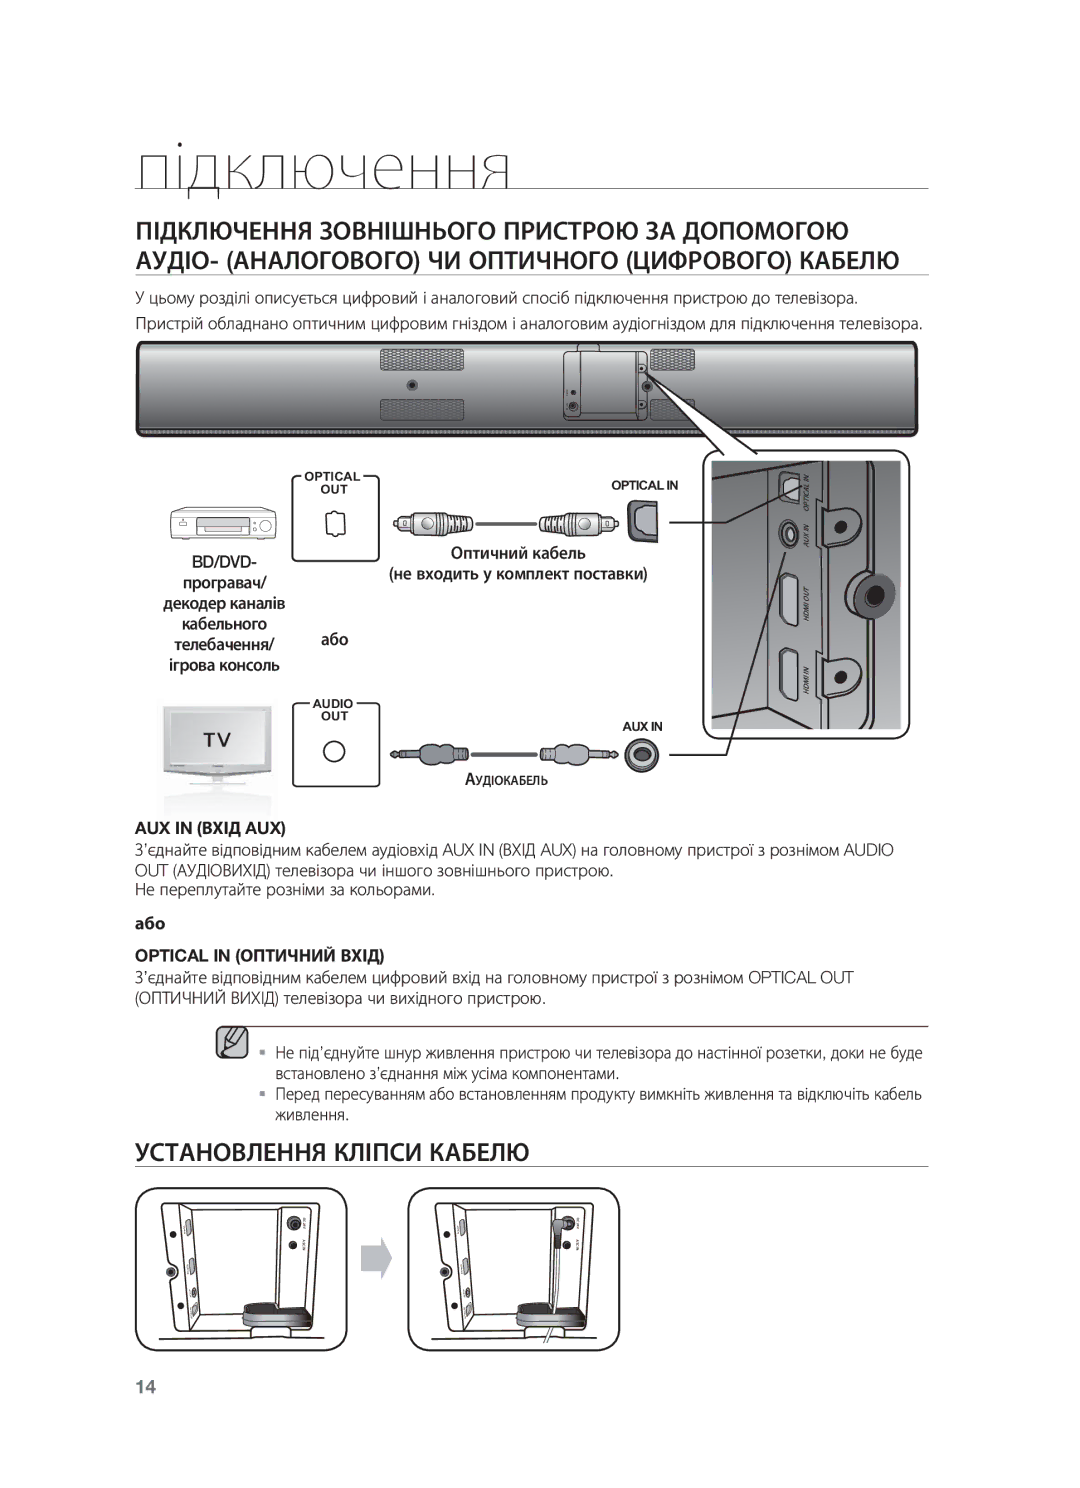 Samsung HW-F750/RU manual Установлення Кліпси Кабелю, Bd/Dvd, AUX in Вхід AUX, Або, Optical in Оптичний Вхід 